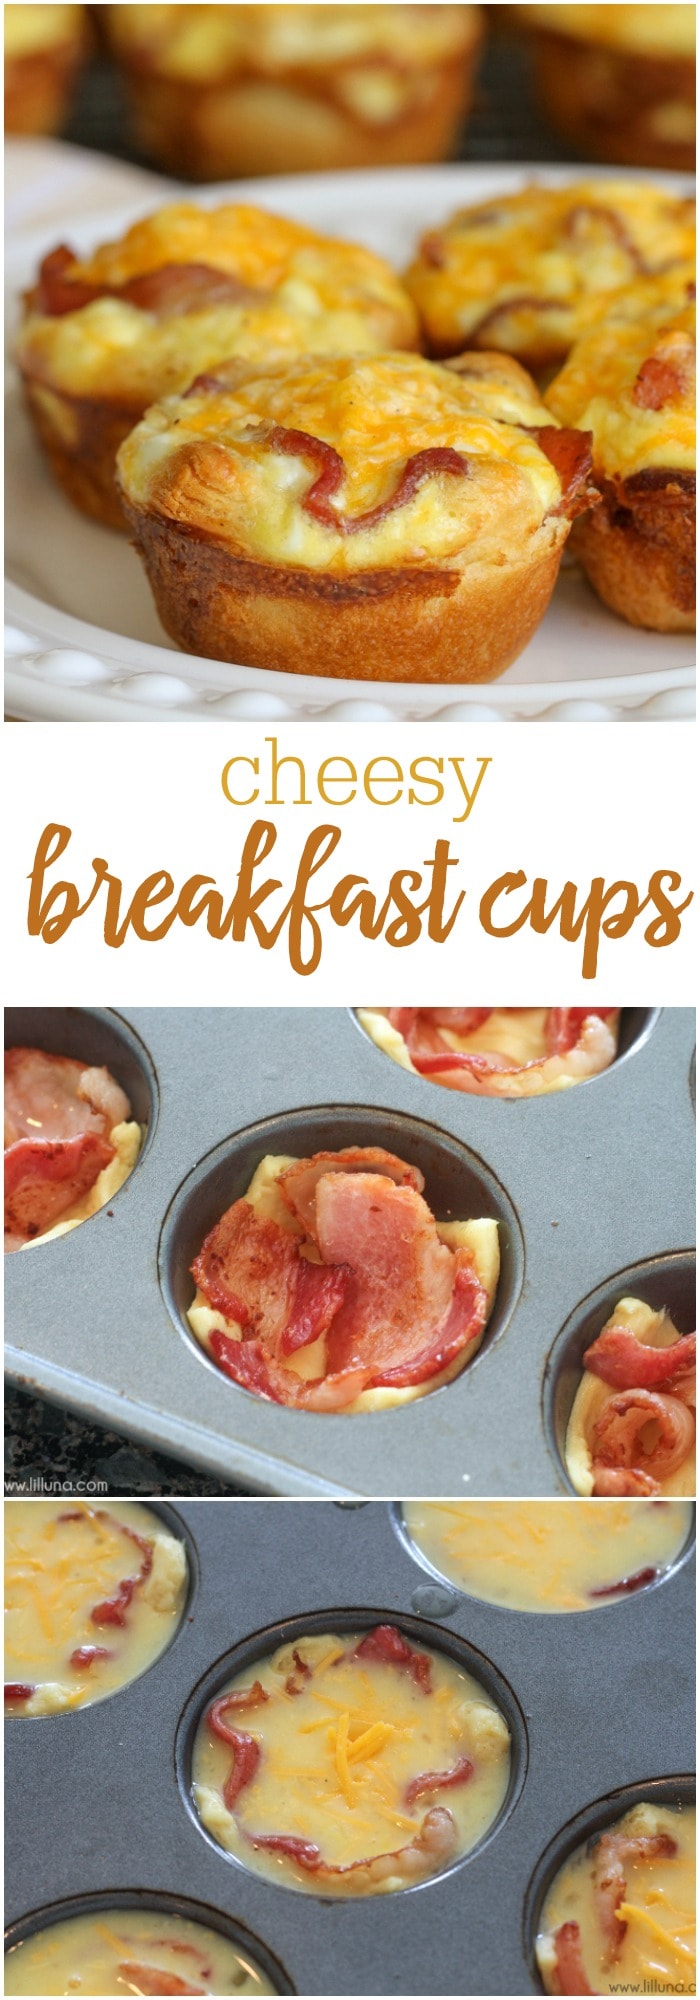 简单的奶酪早餐——一个新月形的卷底，上面有鸡蛋、培根和奶酪!最适合早餐或早午餐的松饼!